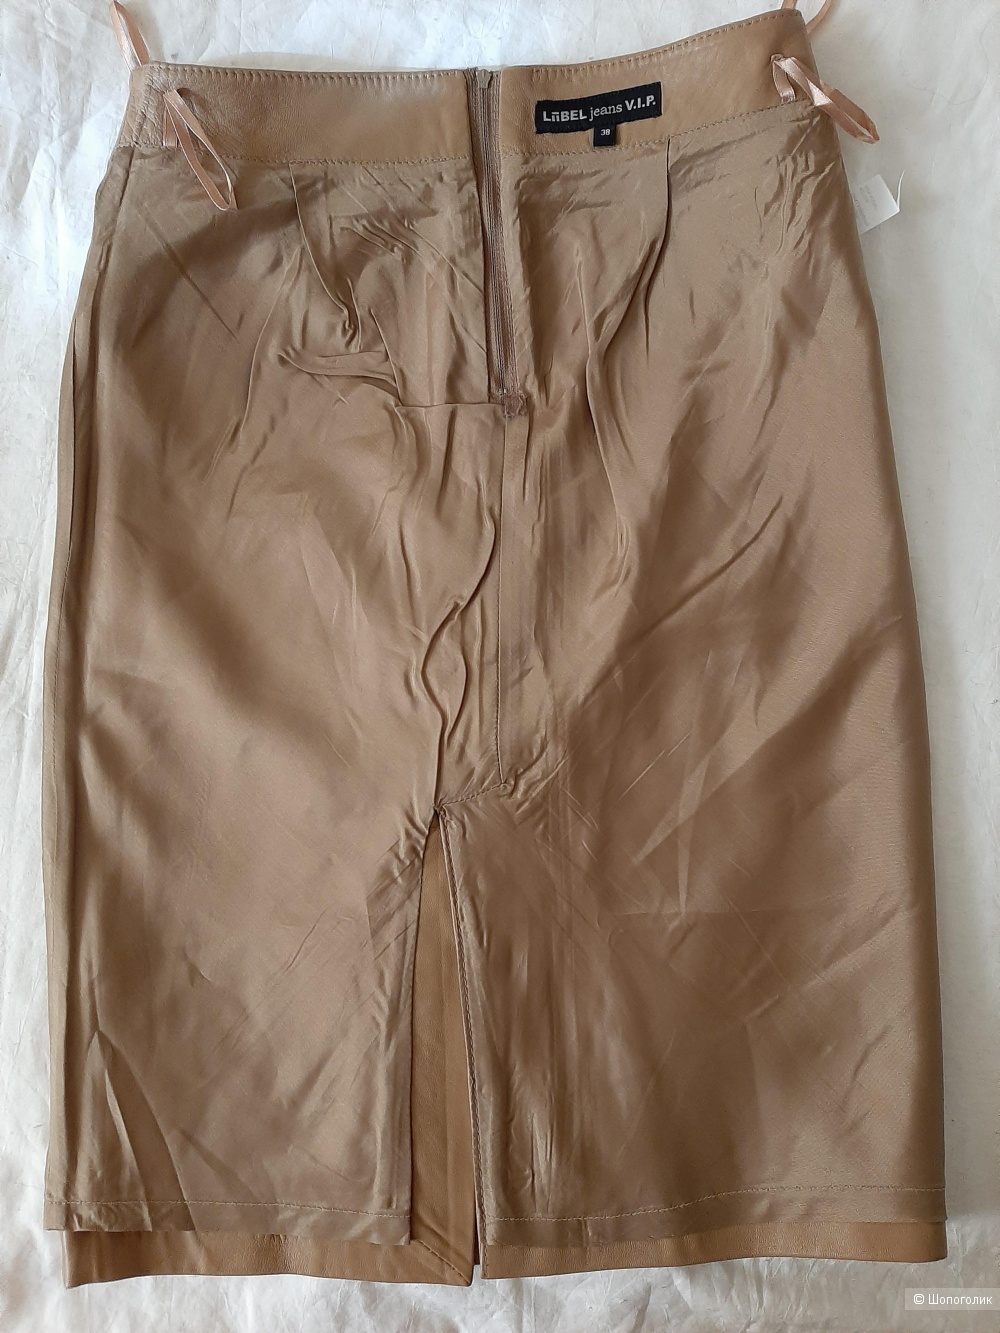 Кожаная юбка LiBEL  jens V.I.P.  размер 38